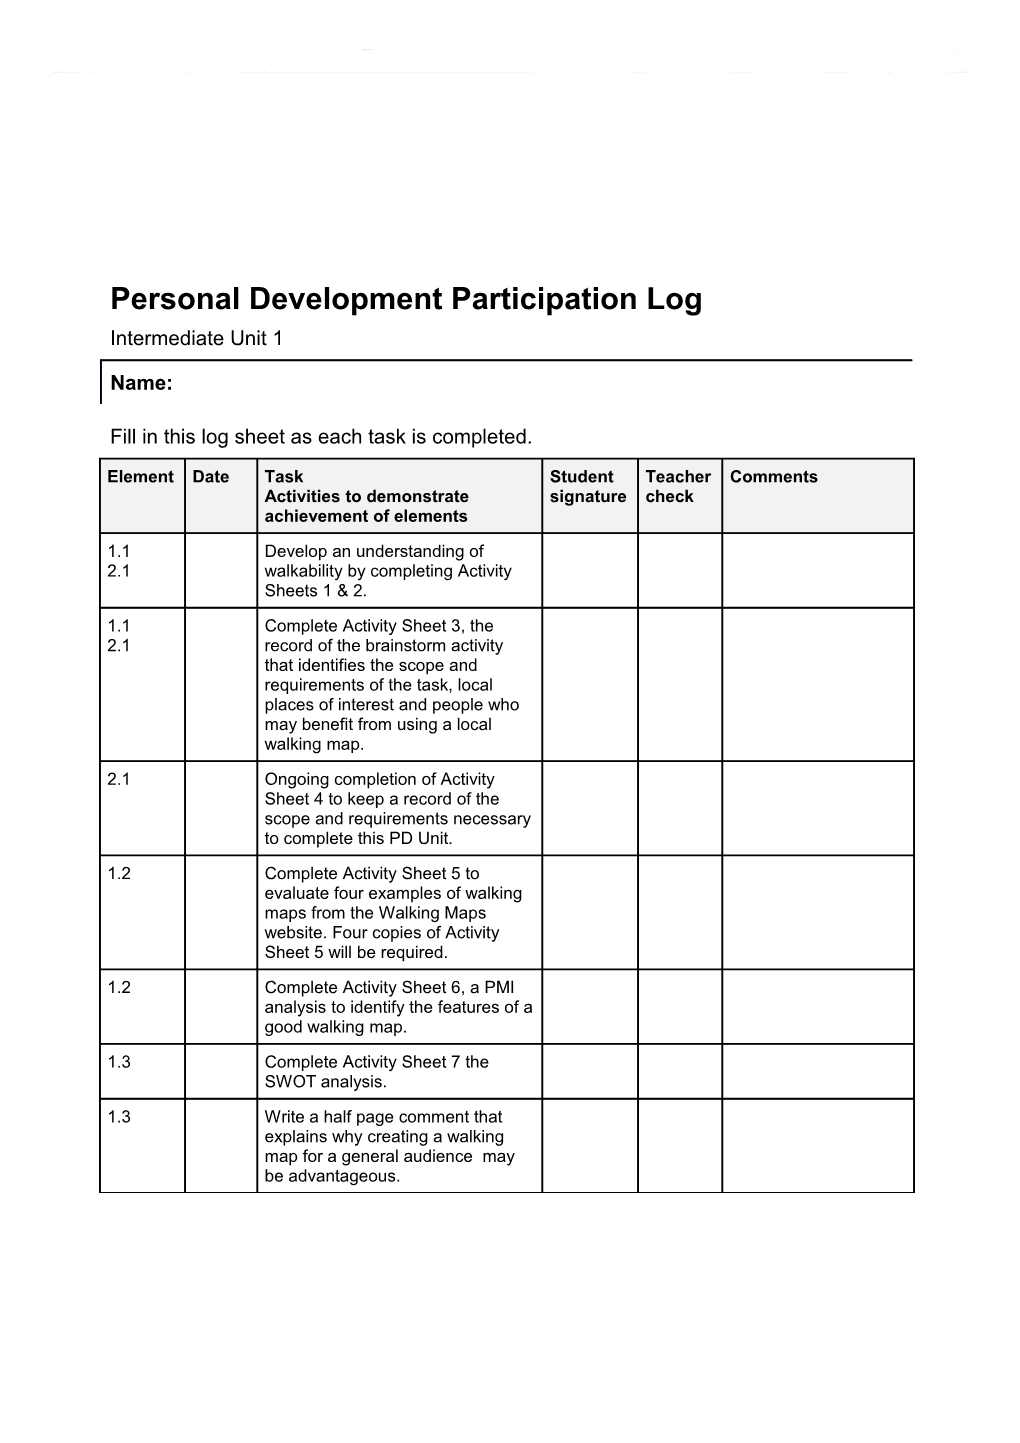 Personal Development Participation Log